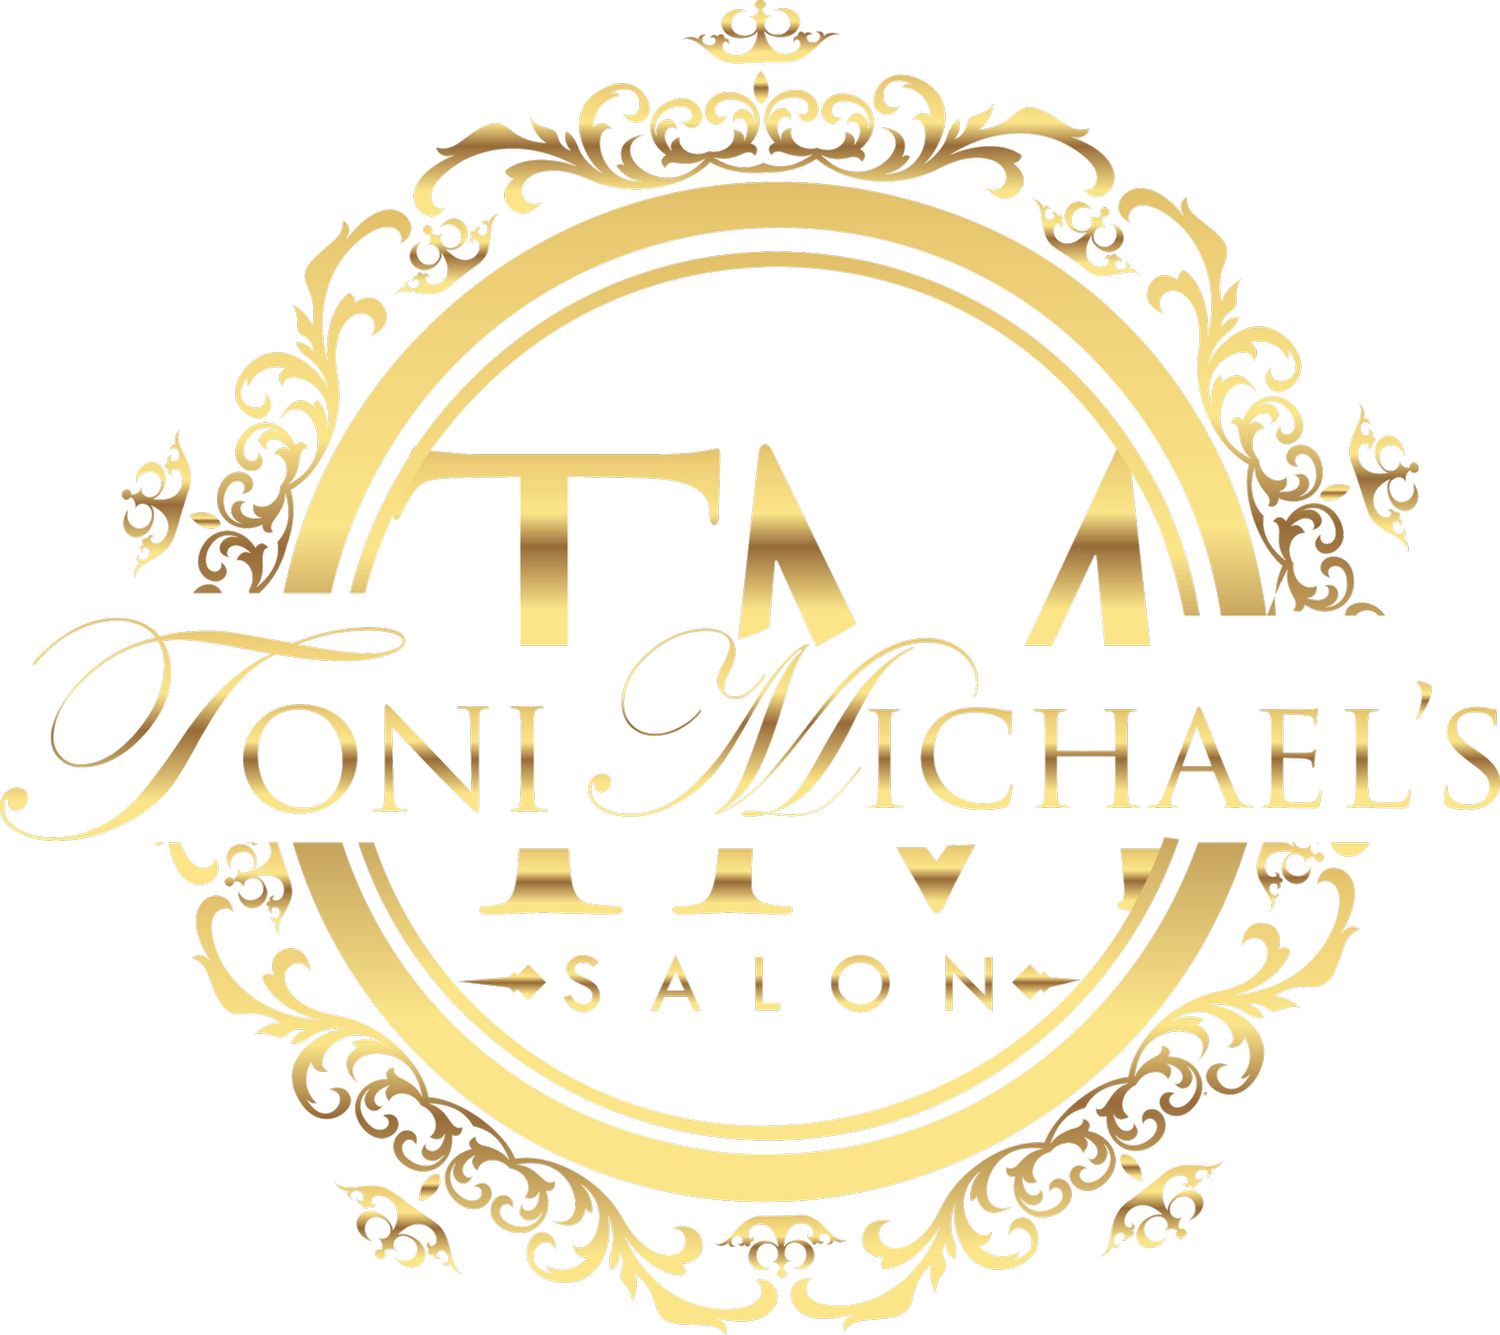 Toni Michael's Salon